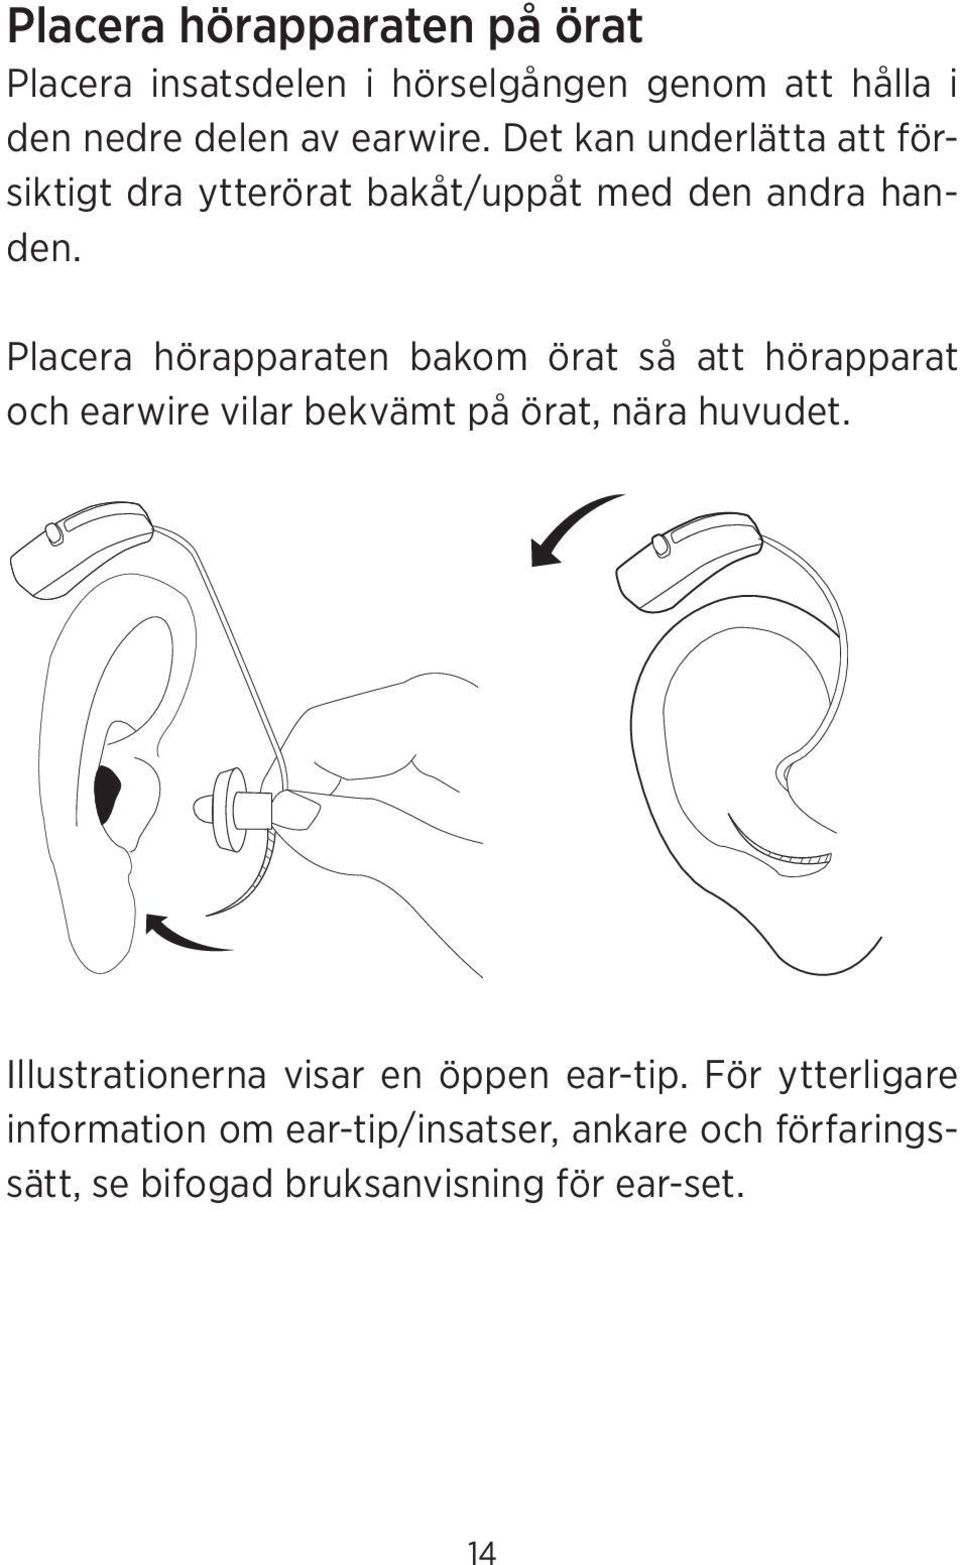 Placera hörapparaten bakom örat så att hörapparat och earwire vilar bekvämt på örat, nära huvudet.